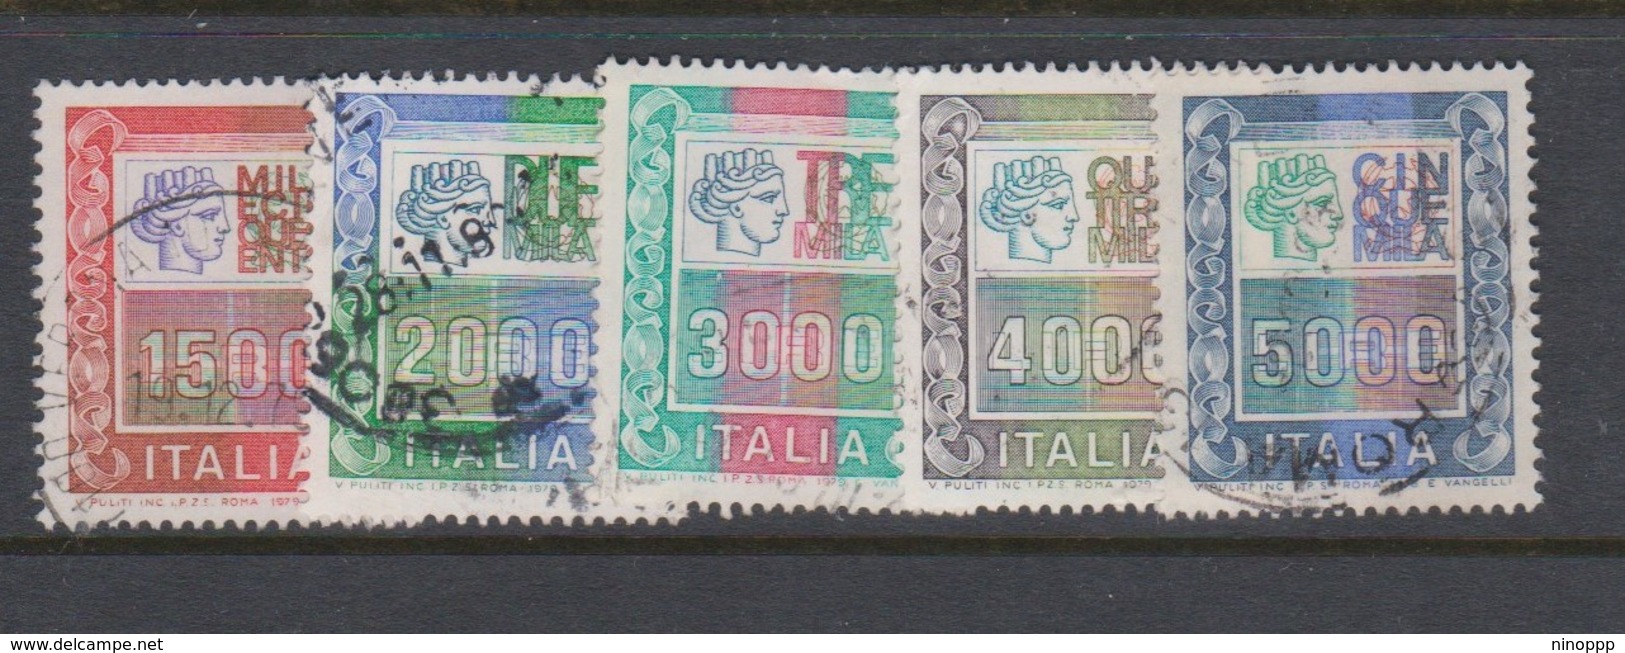 Italy Republic S 1438-1442 1978 Italia Turrita,used - 1971-80: Used